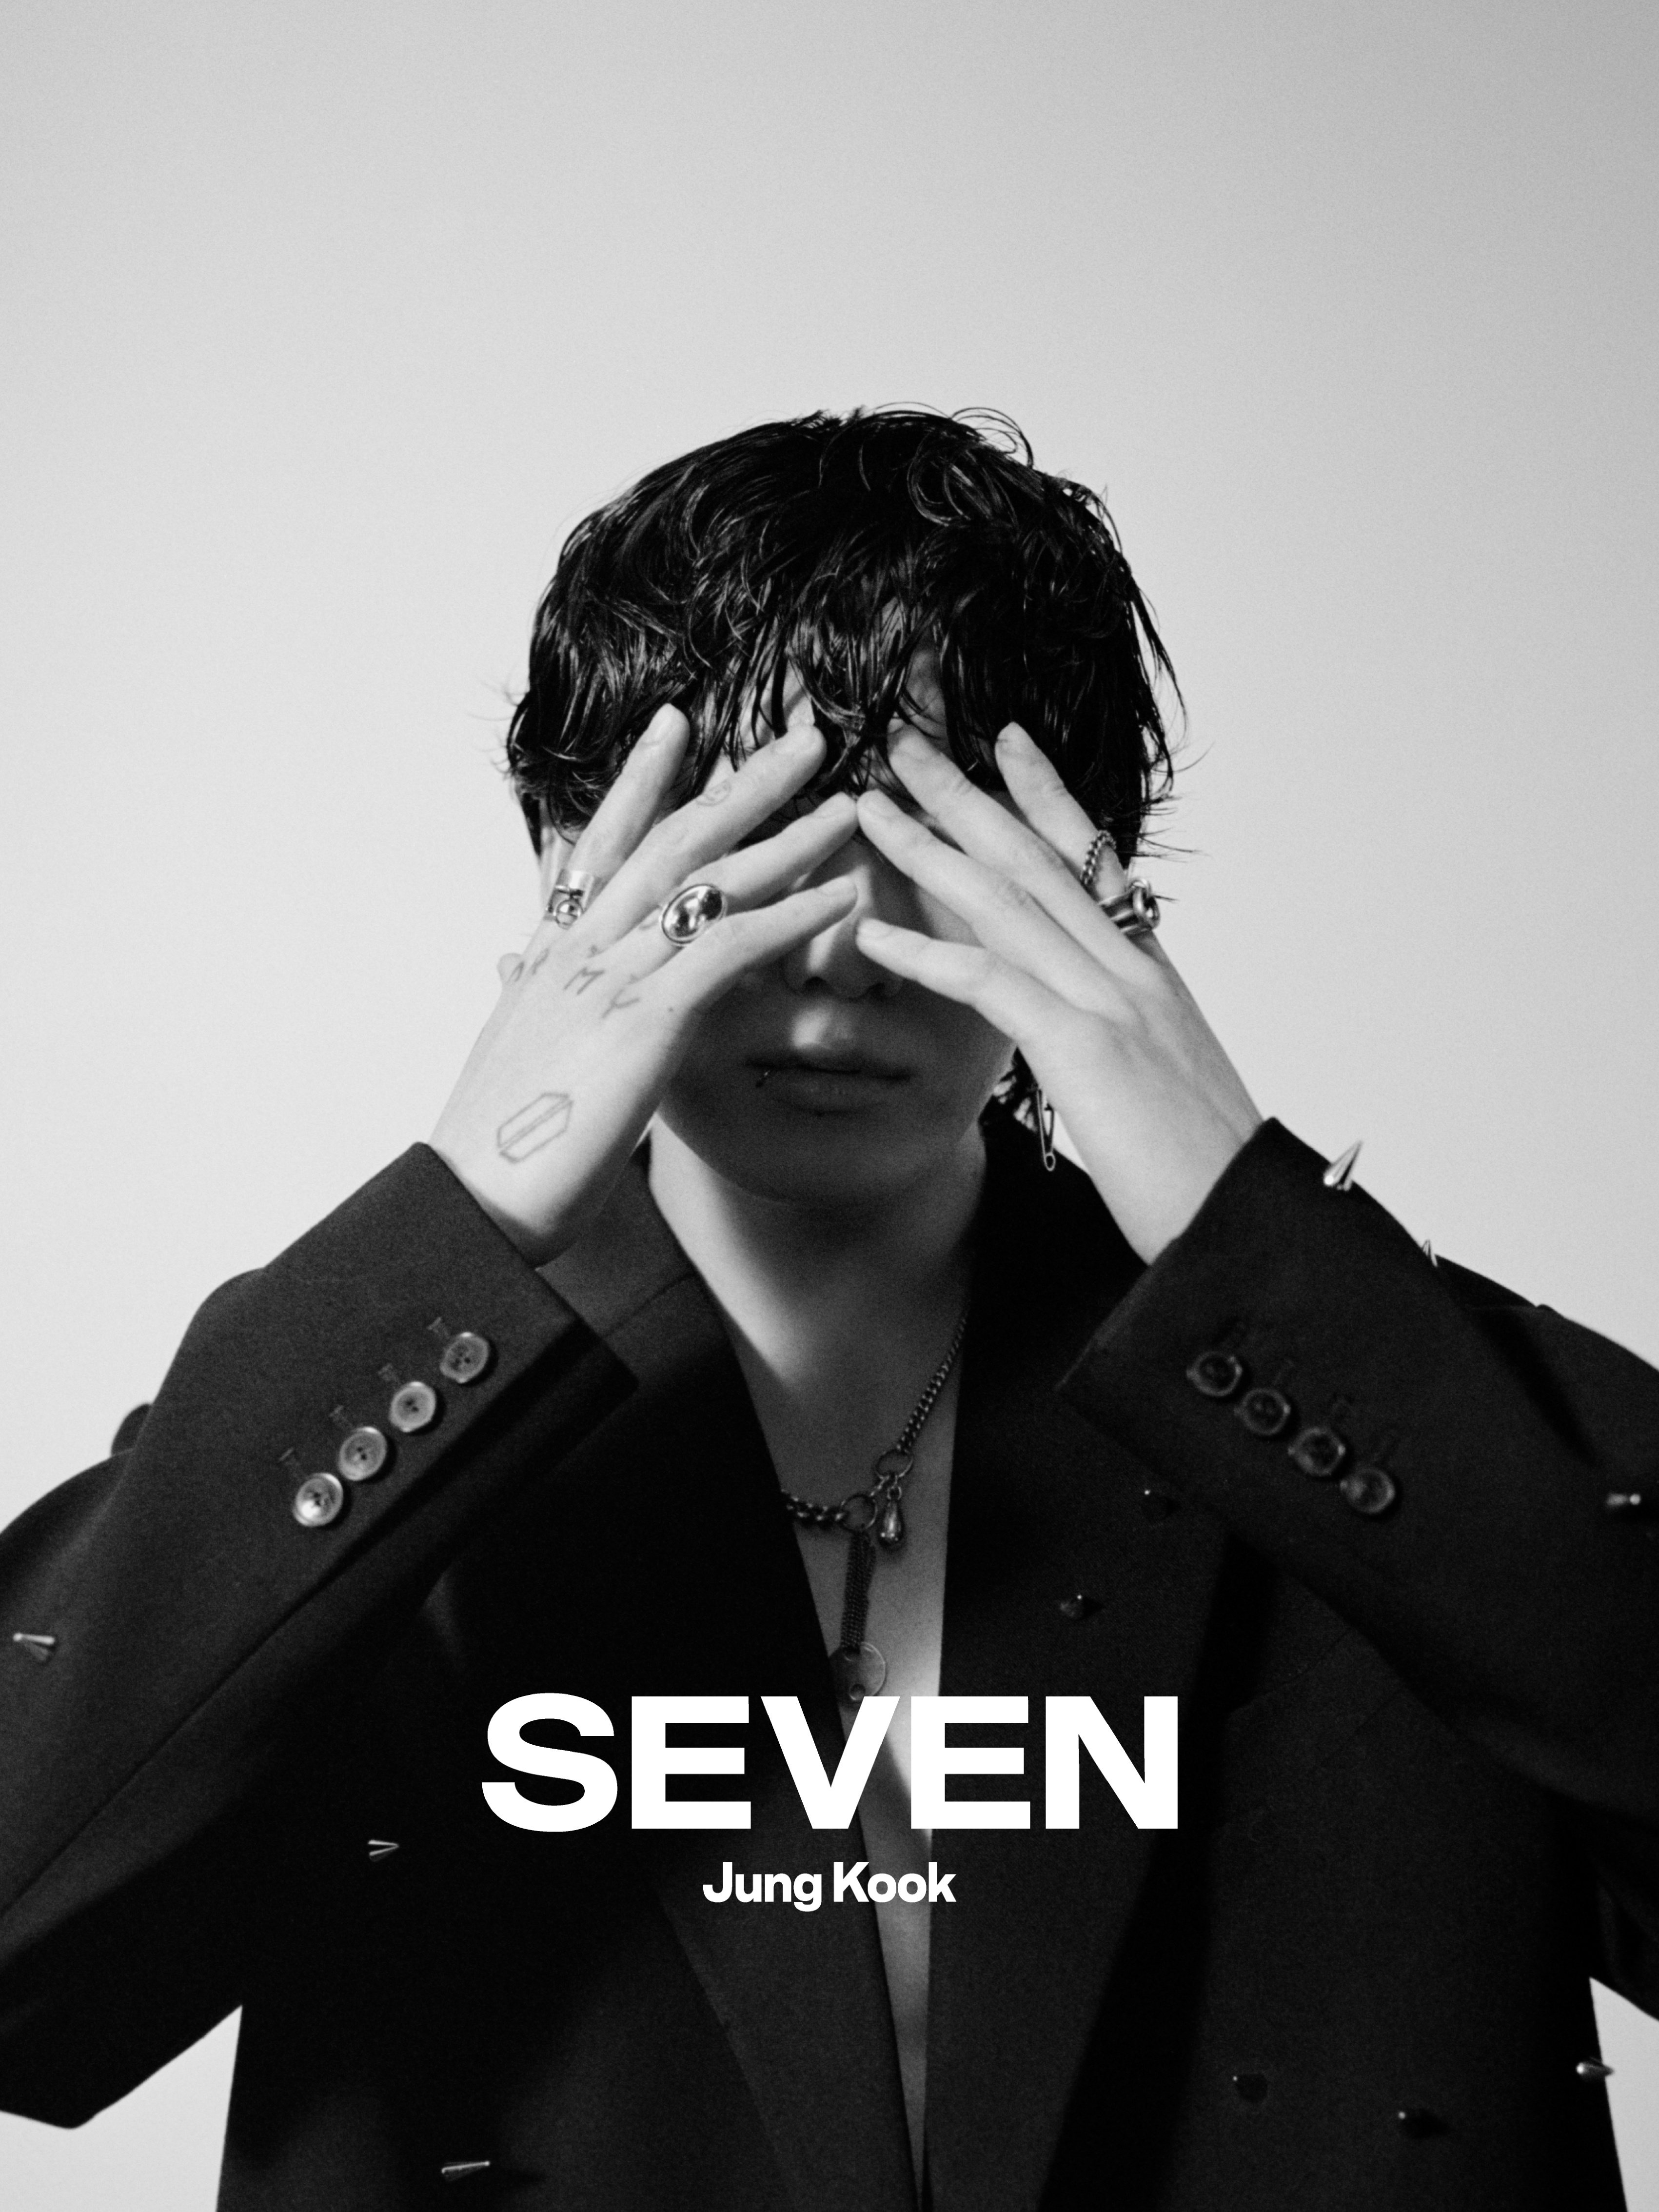 BTS Jungkook Seven Teaser Photos (HD/HQ) - K-Pop Database / dbkpop.com